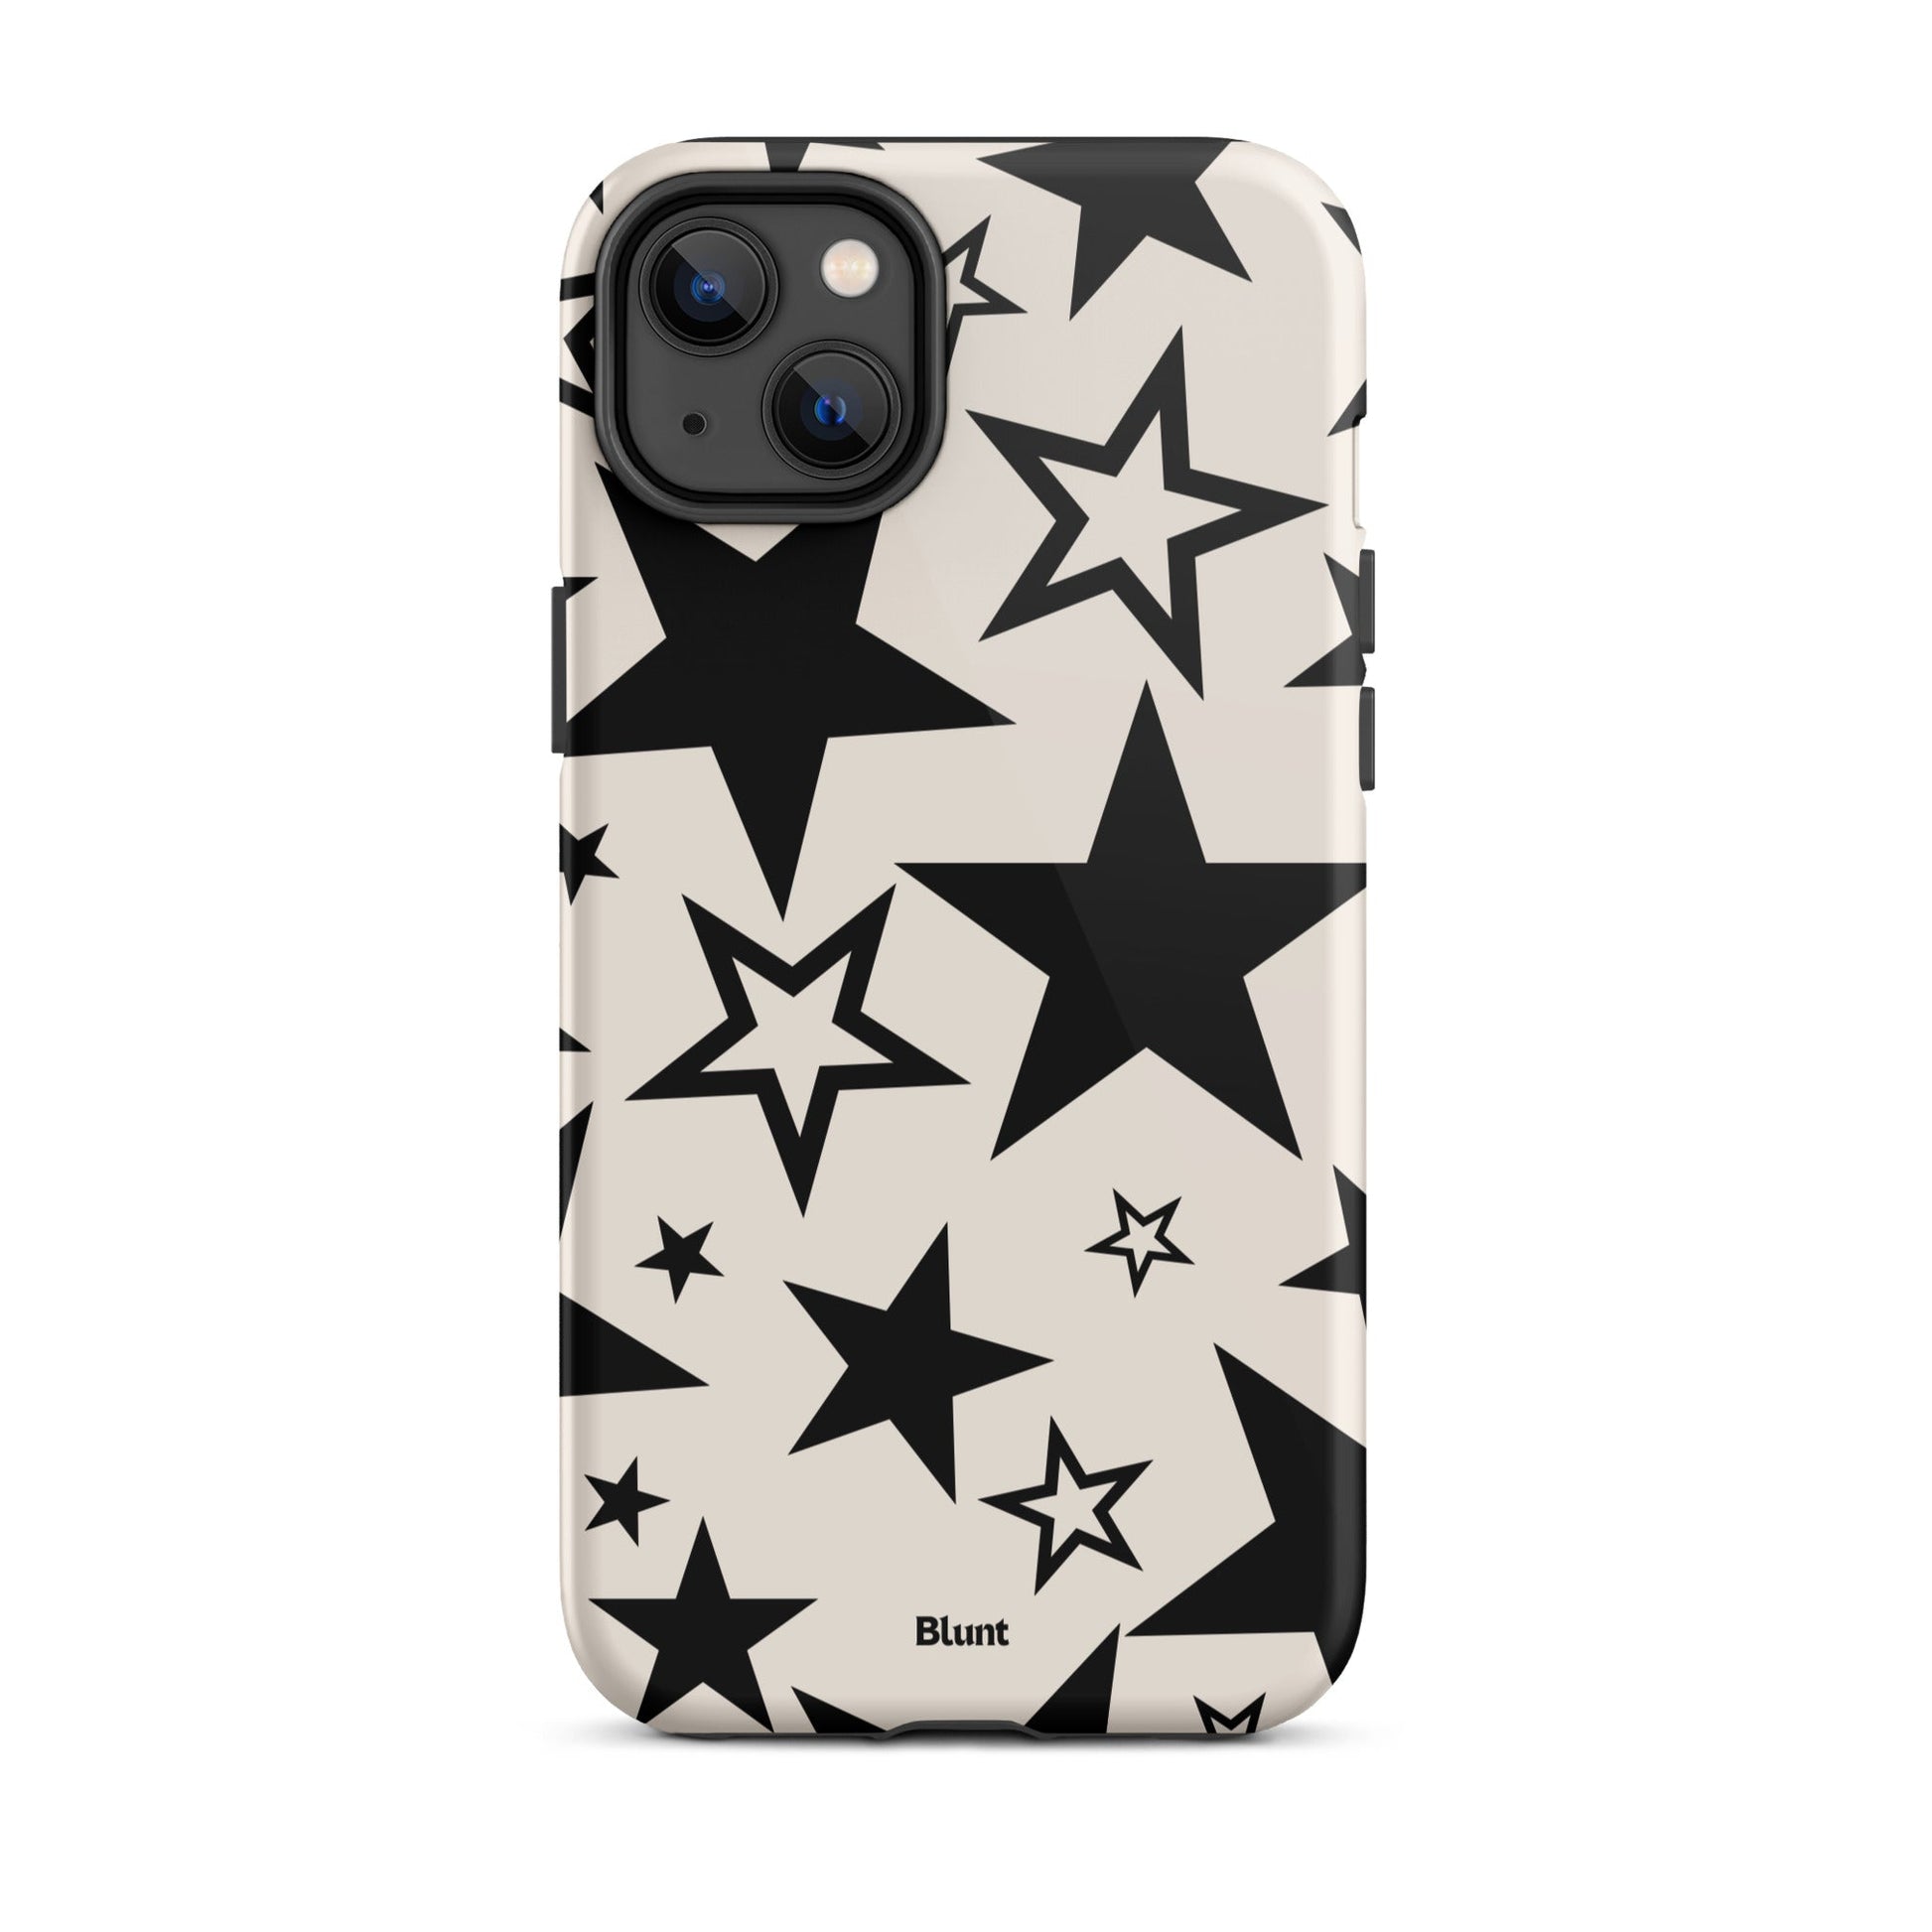 Stargirl iPhone Case - blunt cases